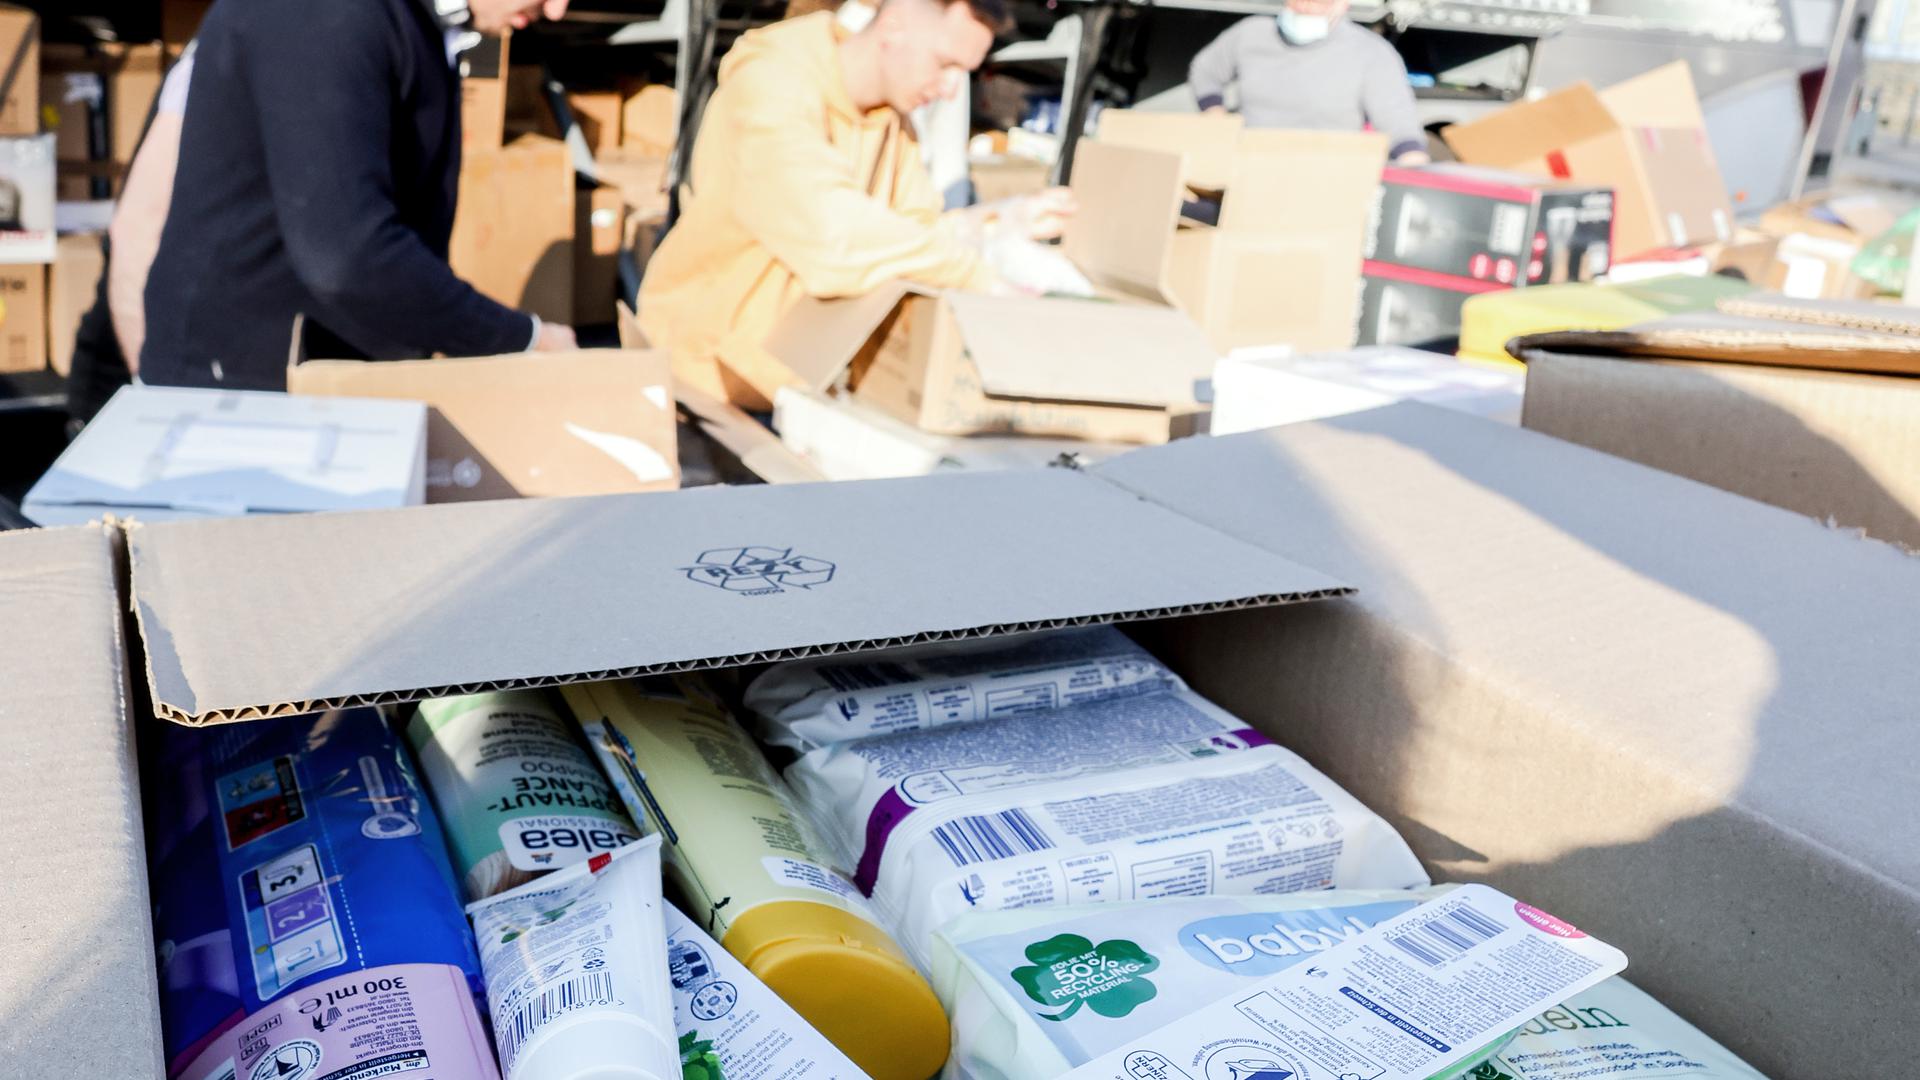 Hygieneartikel und andere dringend benötigte Güter sind in Kartons verpackt.
